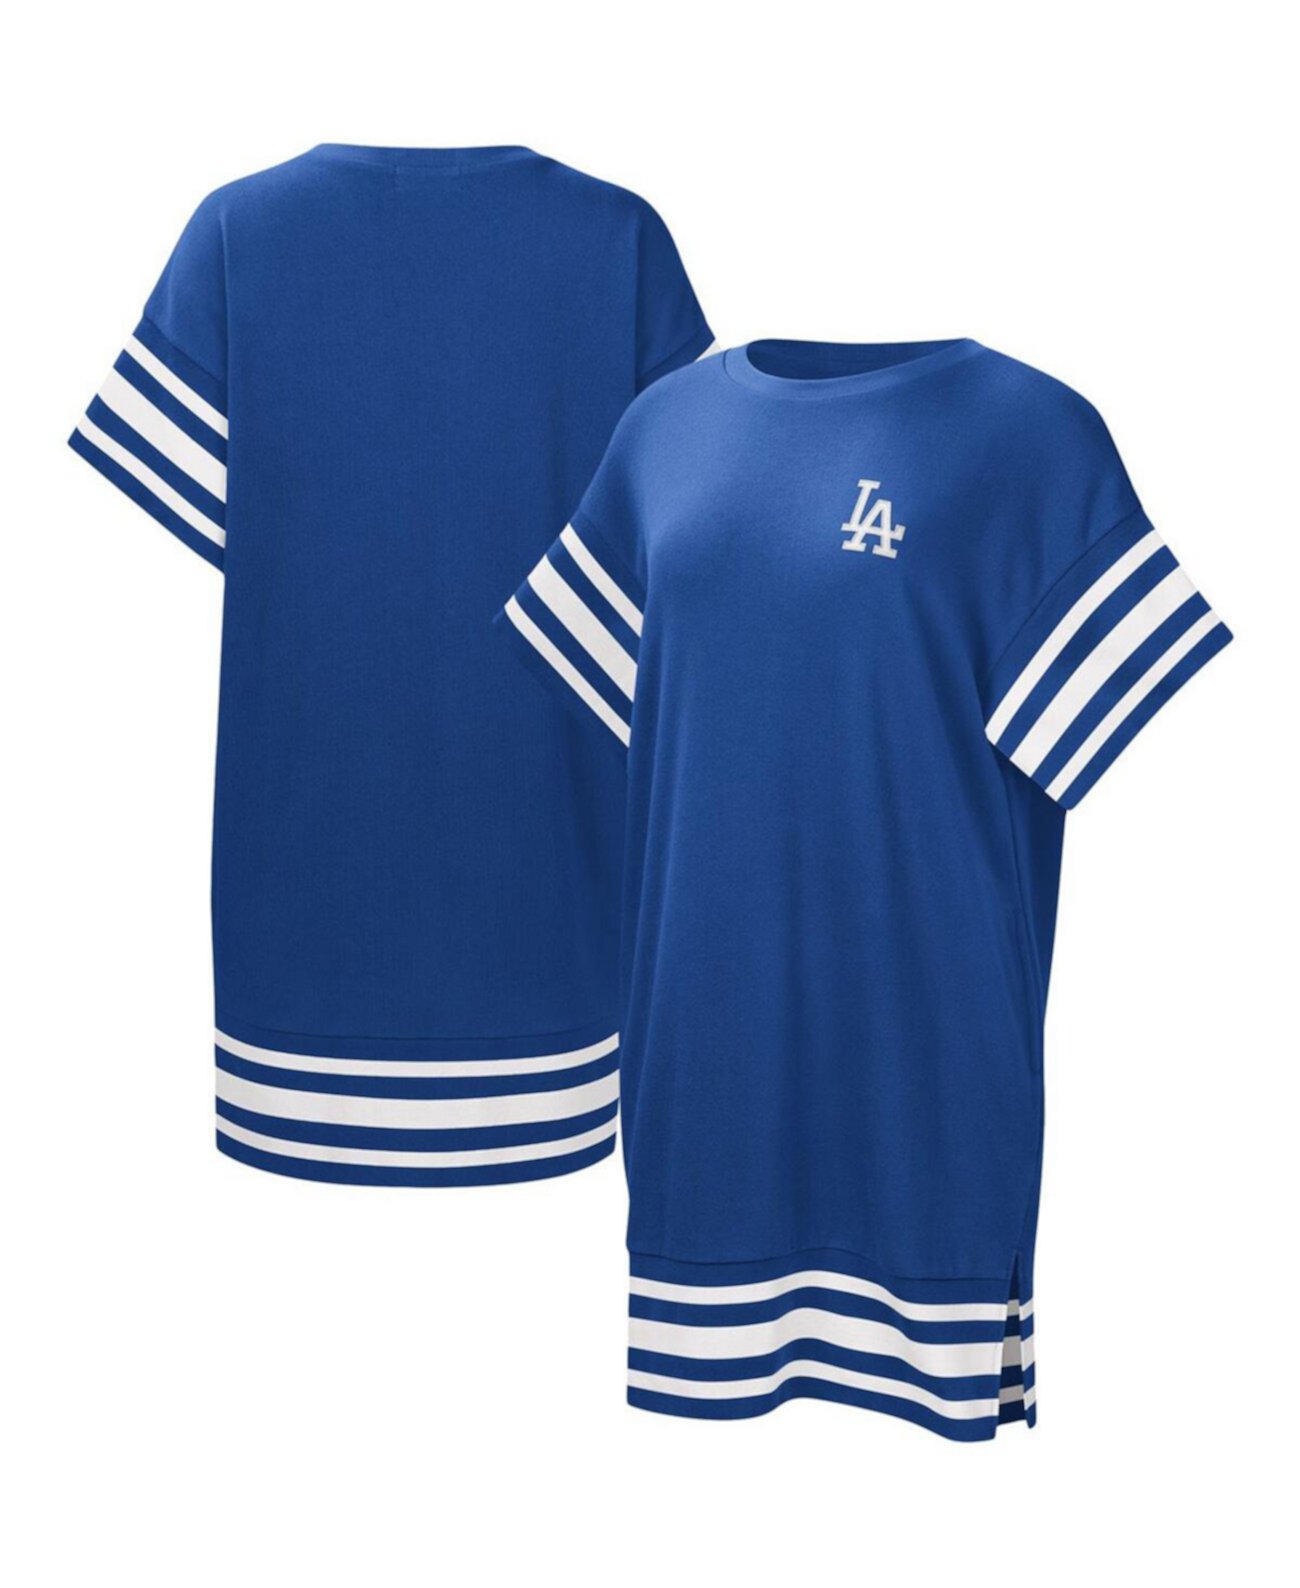 Женское платье-футболка с каскадом Royal Los Angeles Dodgers Touch